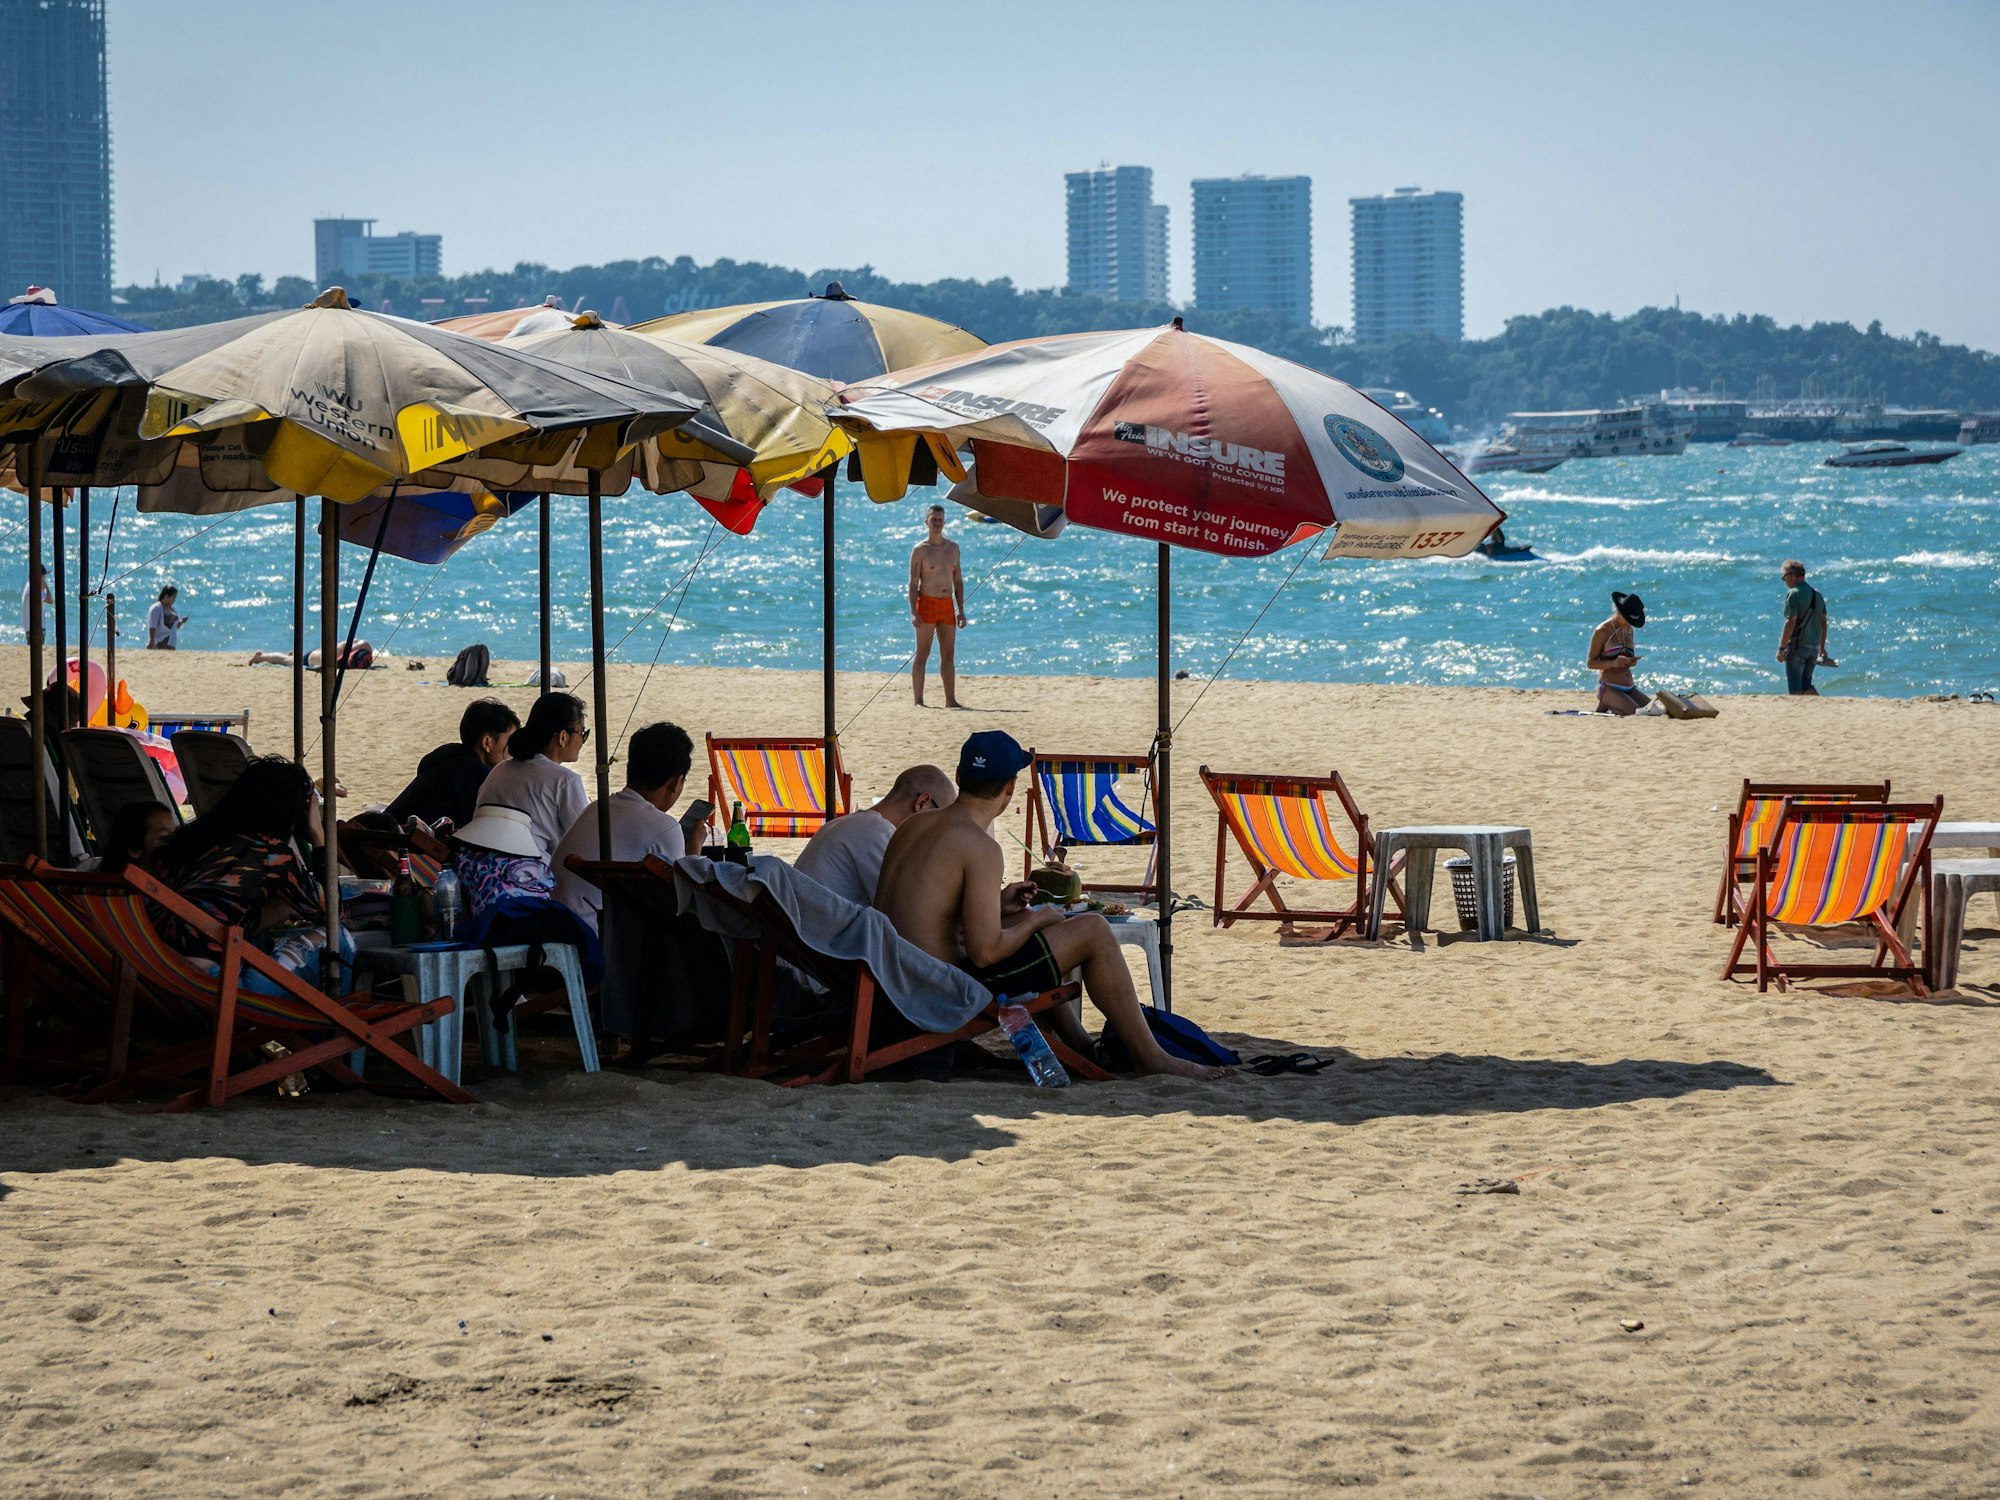 Touristen und Touristinnen auf Liegestühlen unter Sonnenschirmen am Strand von Pattaya in Thailand